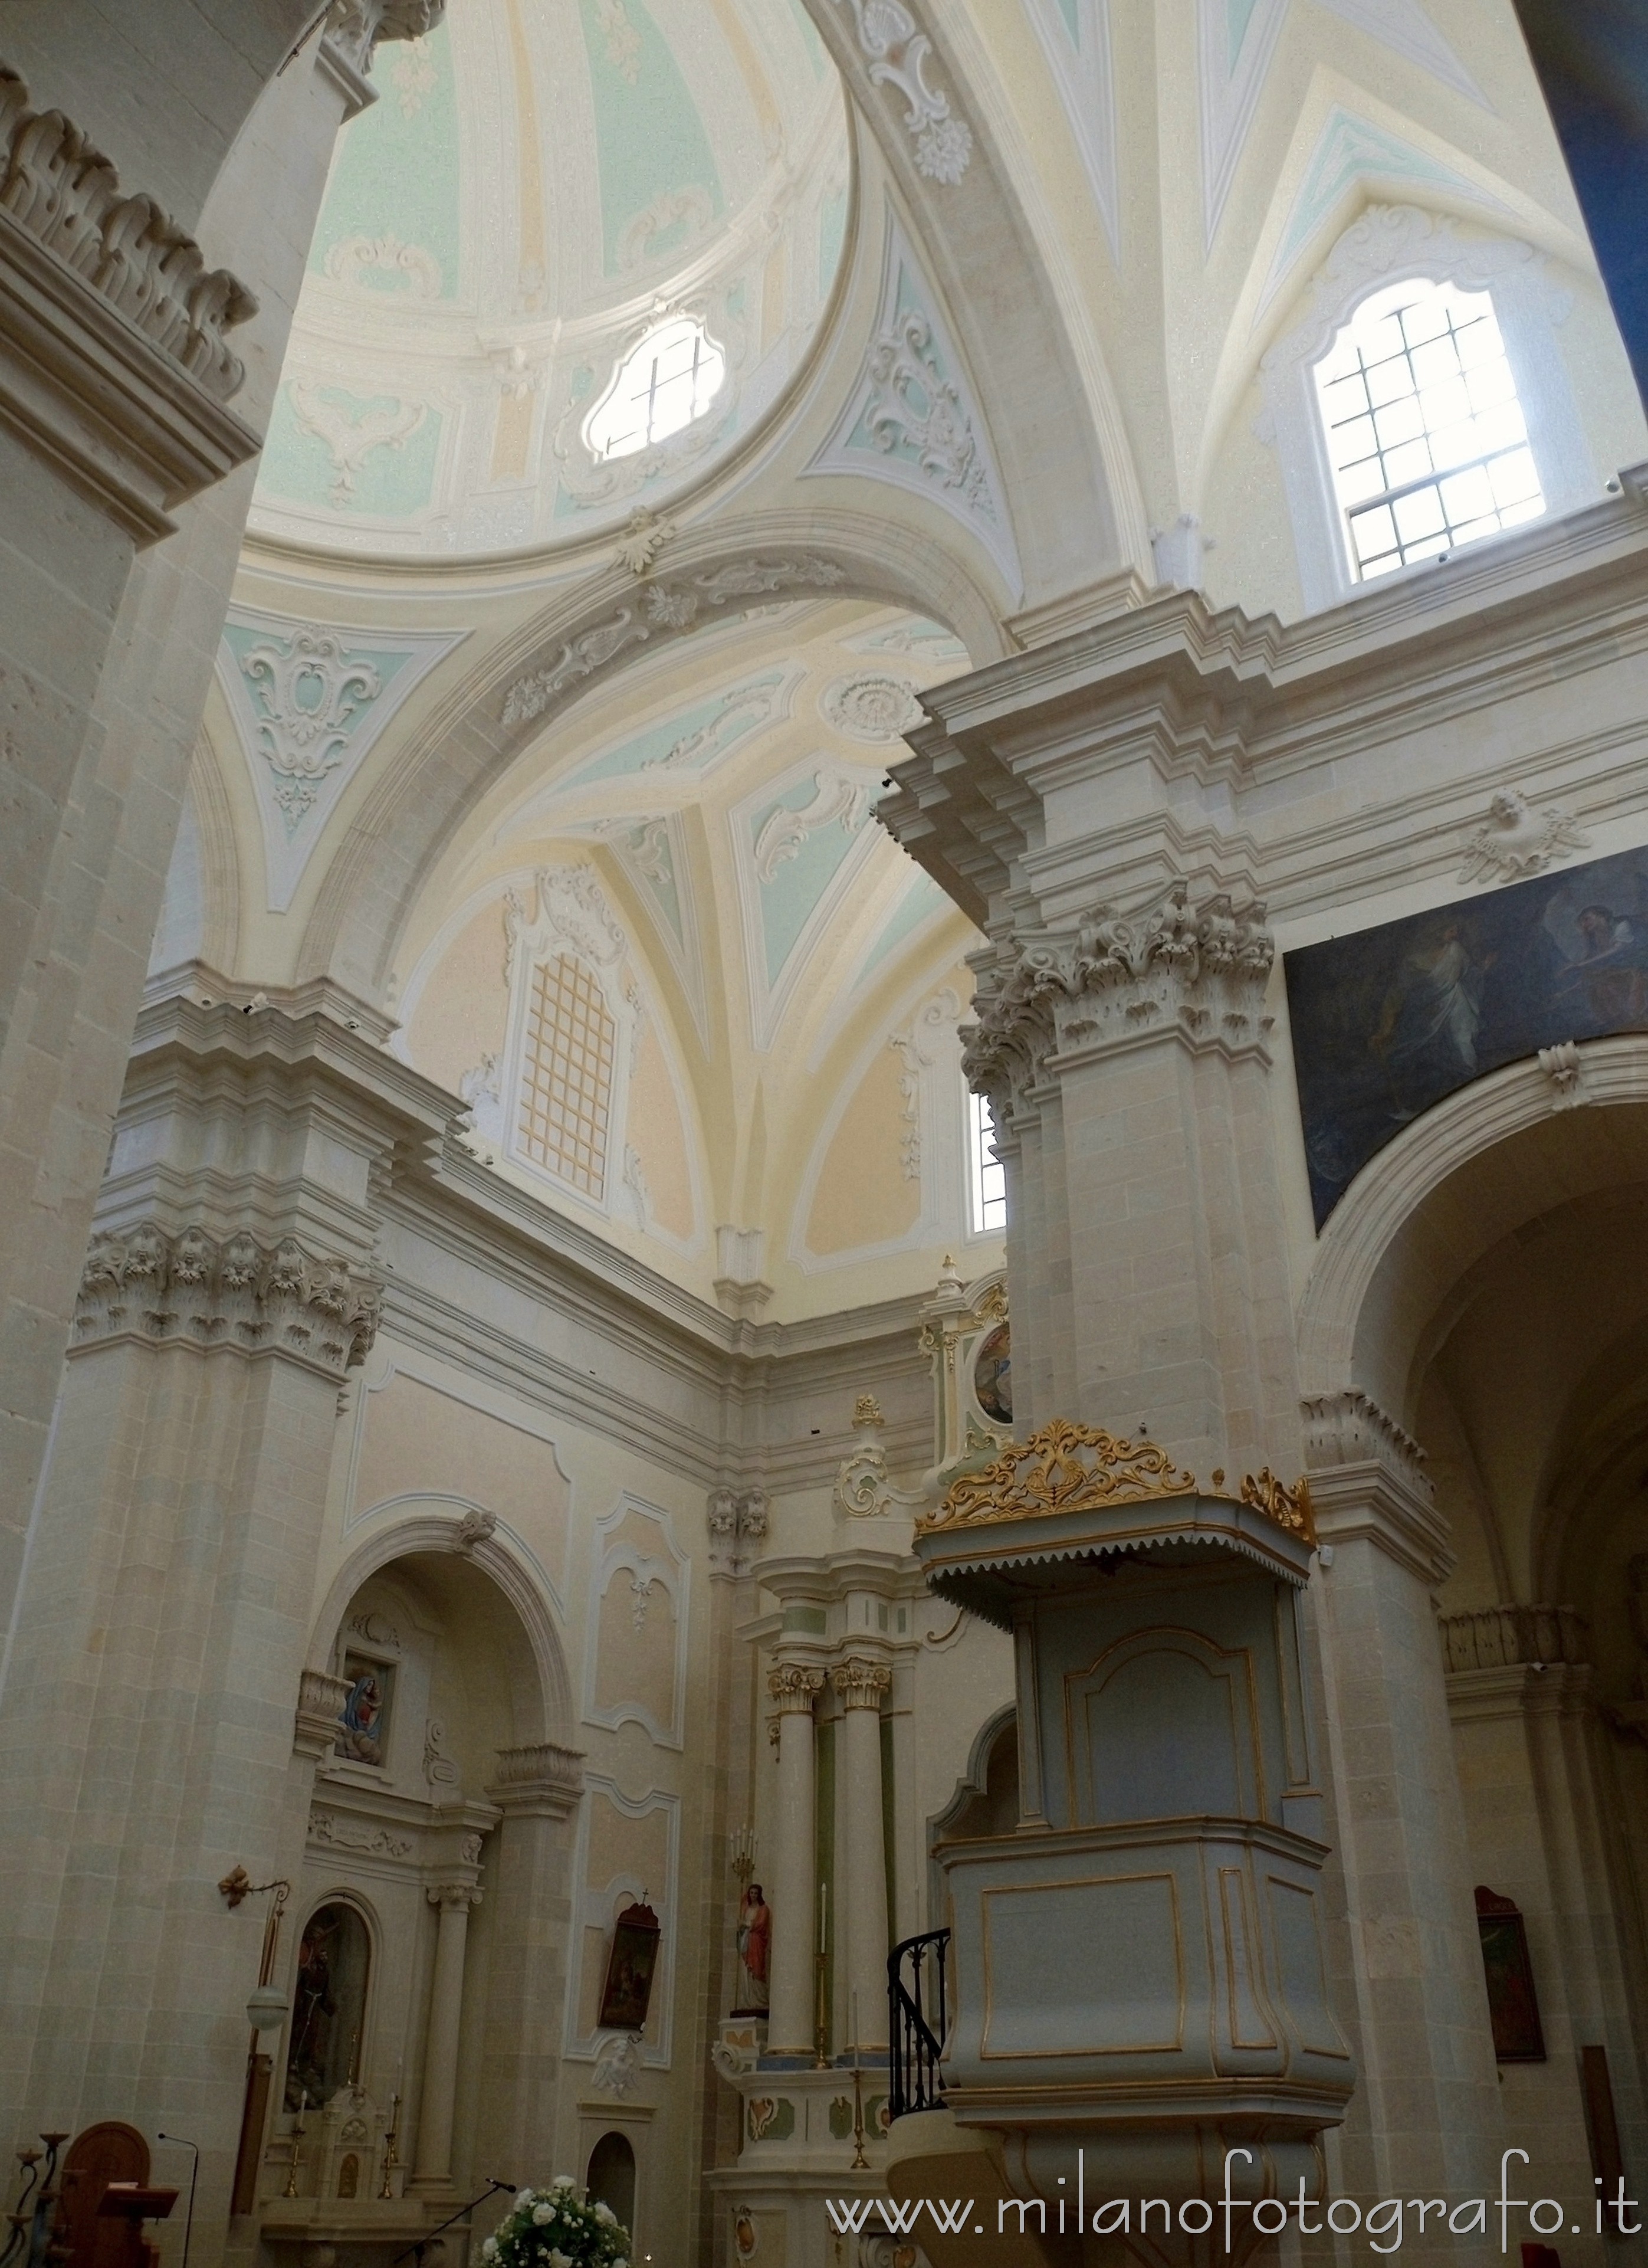 Uggiano La Chiesa (Lecce): Dettaglio degli interni della Chiesa di Santa Maria Maddalena - Uggiano La Chiesa (Lecce)